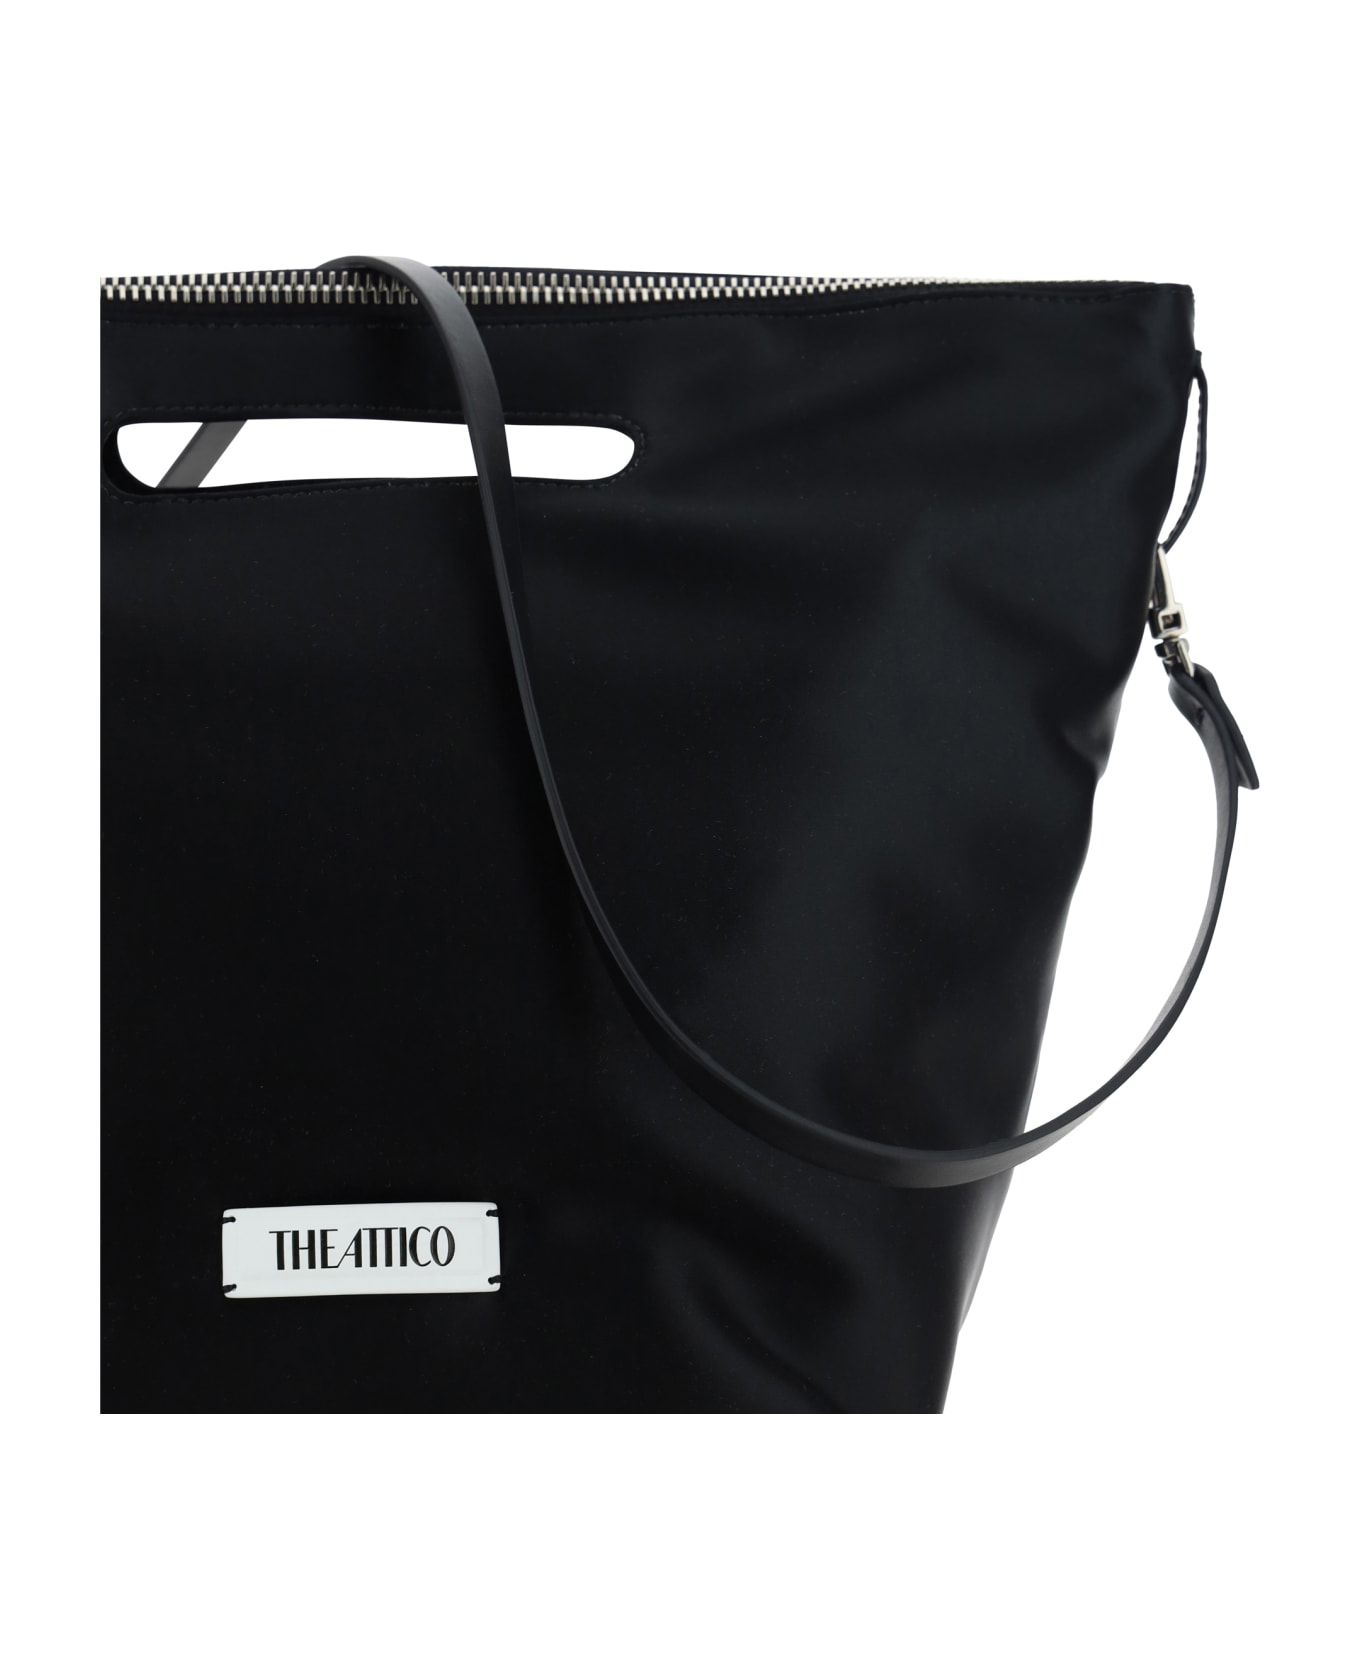 The Attico Via Dei Giardini 30 Handbag - Black